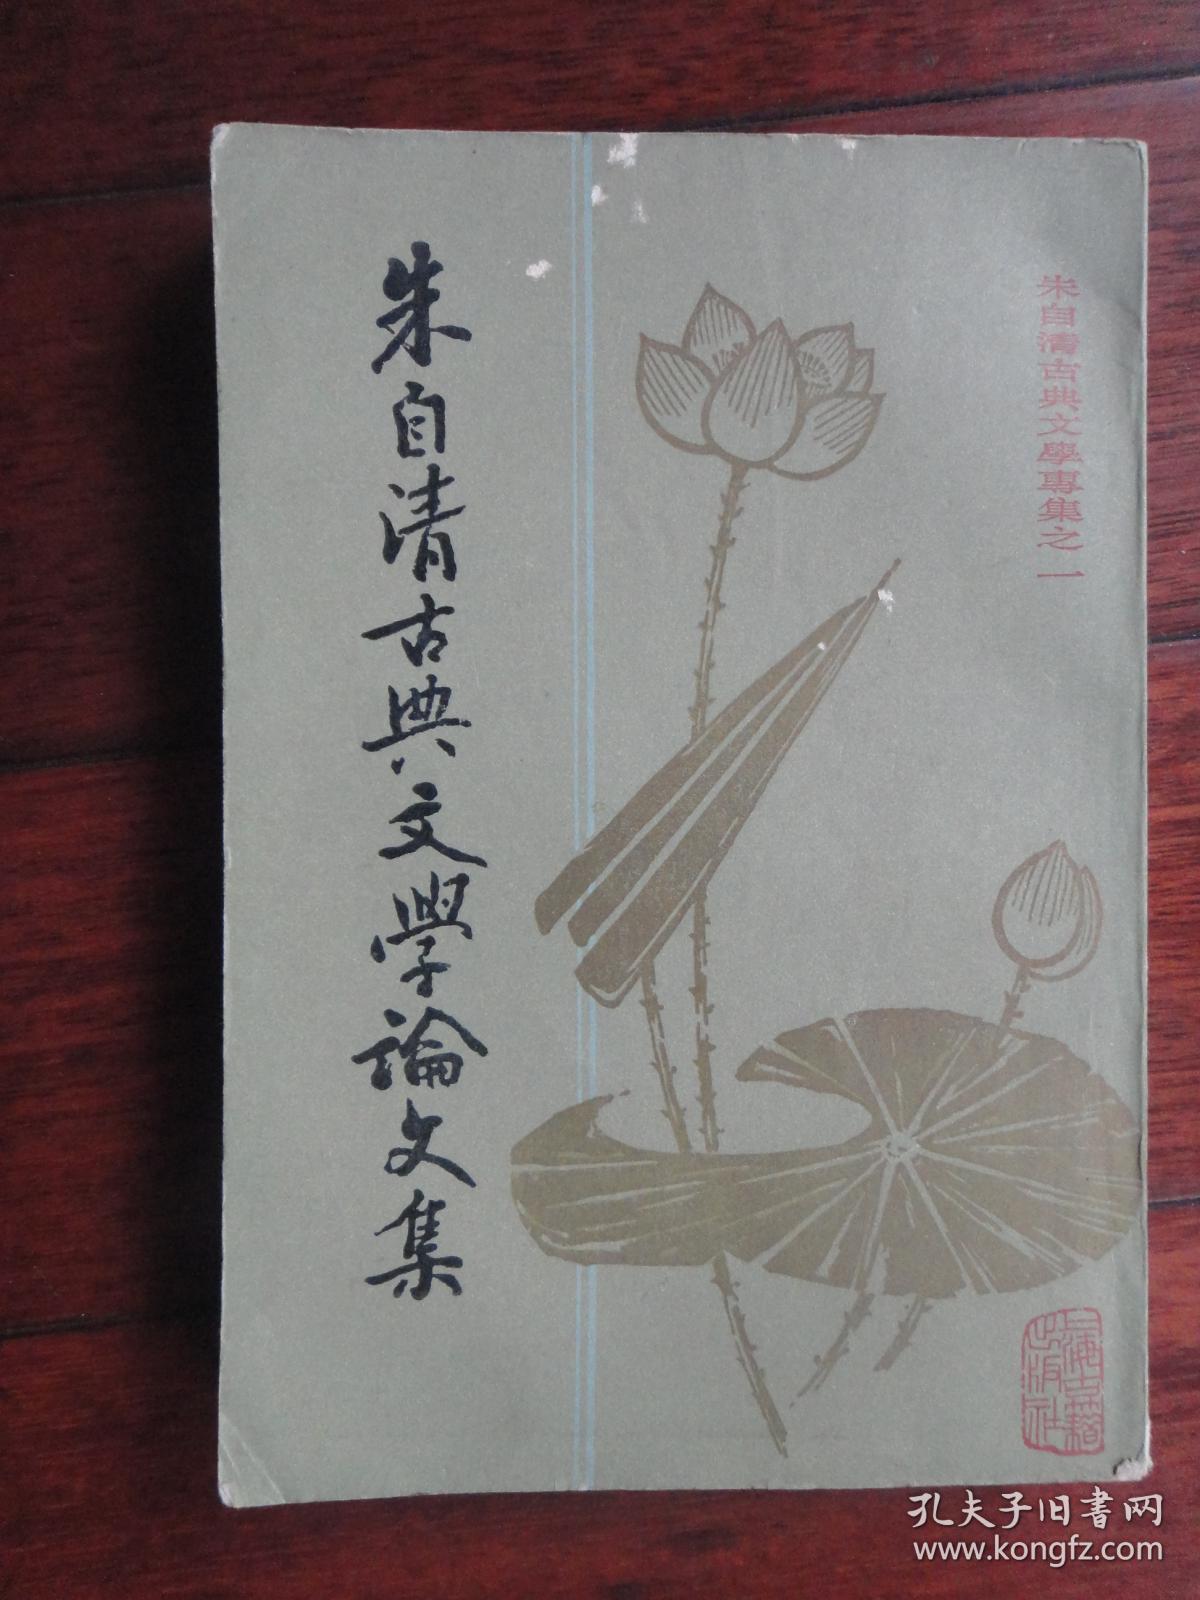 朱自清古典文学论文集上-直版（朱自清）上海古籍出版社 S-483